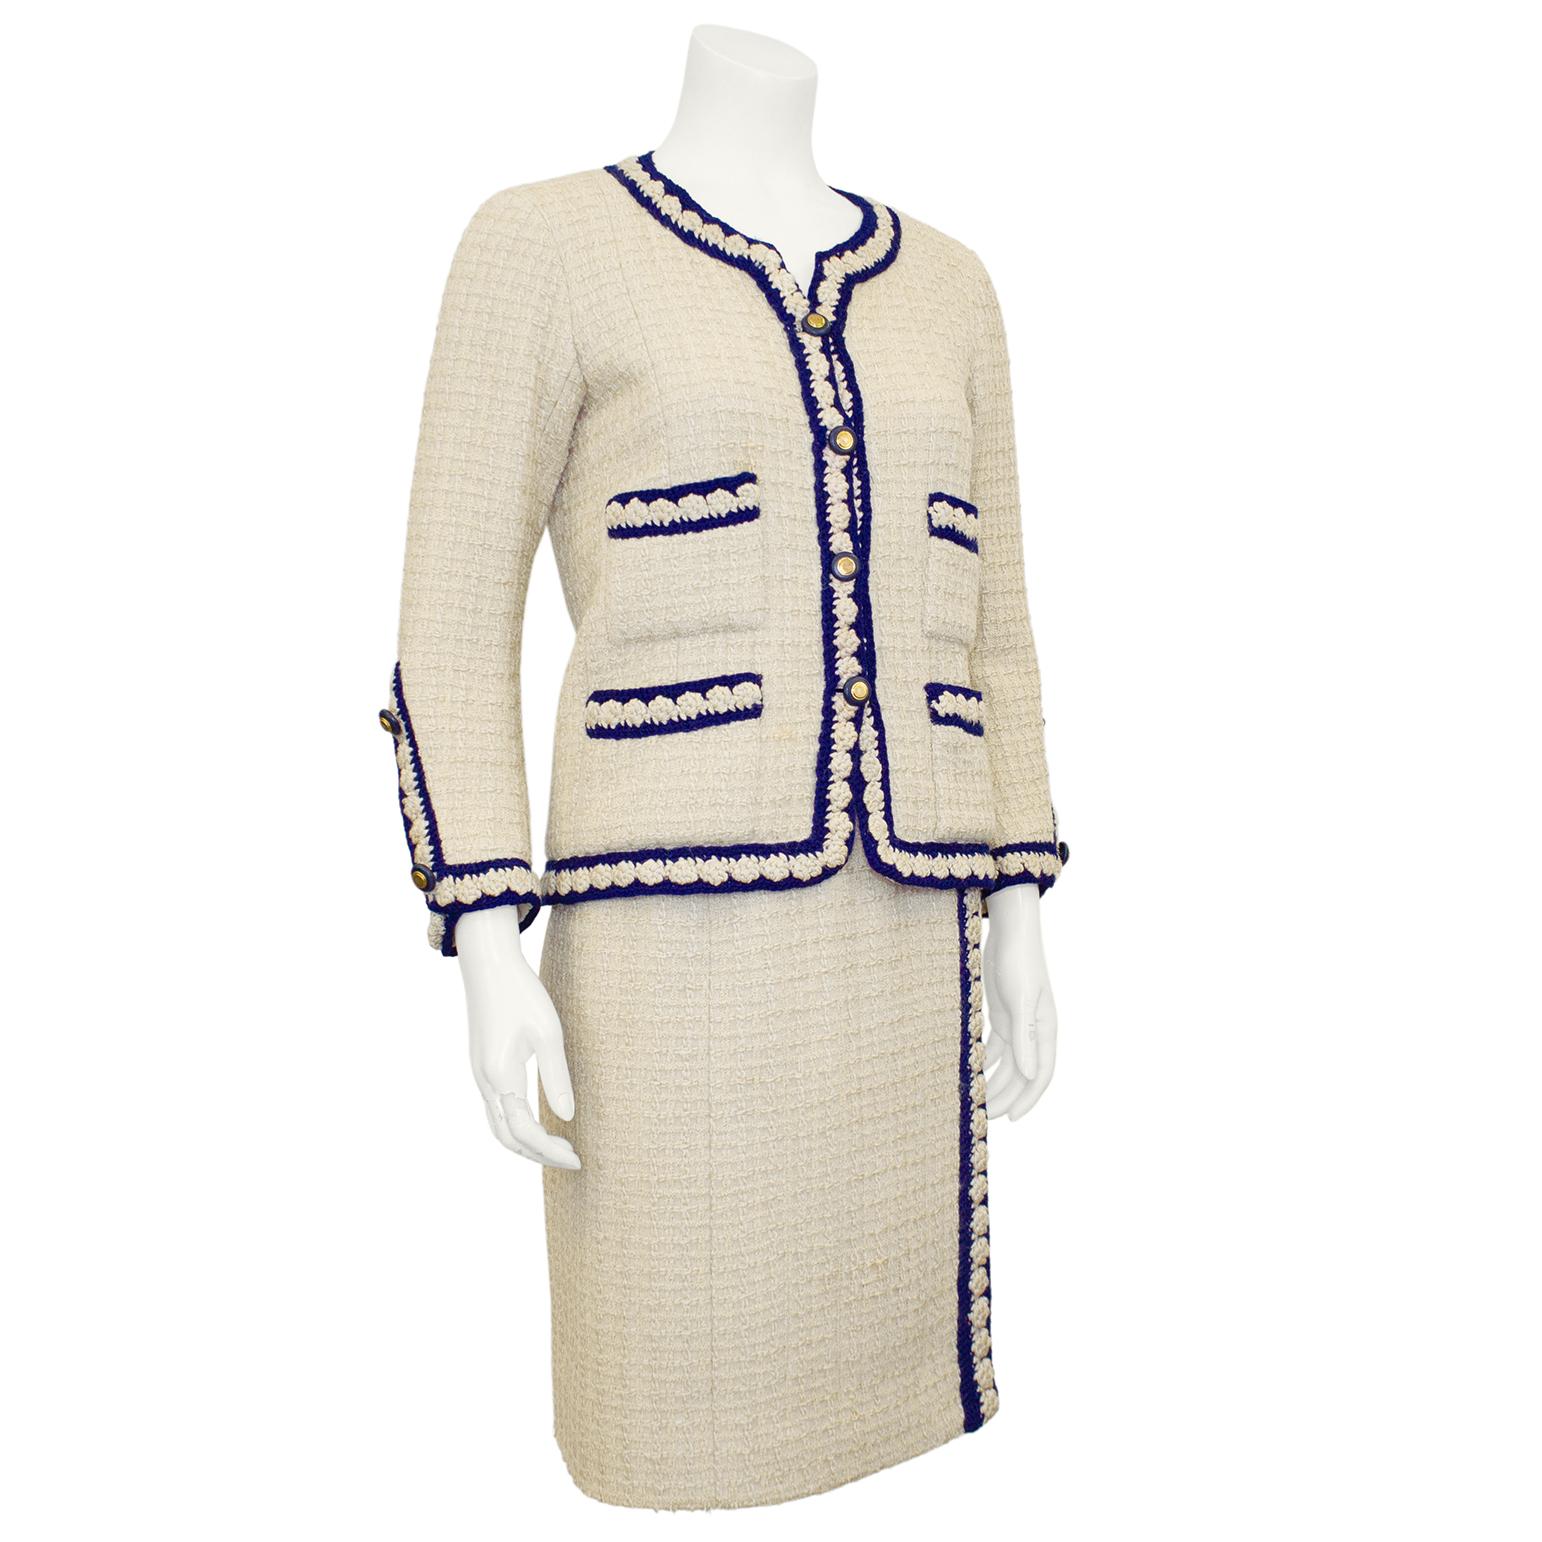 Chanel Haute Couture aus den 1960er Jahren, eine ikonische Kombination aus cremefarbenem Wollbouclé und marineblauem Flechtband, das mit vergoldeten Metallknöpfen in marineblau besetzt ist. Dieser Anzug repräsentiert den zeitlosen, klassischen